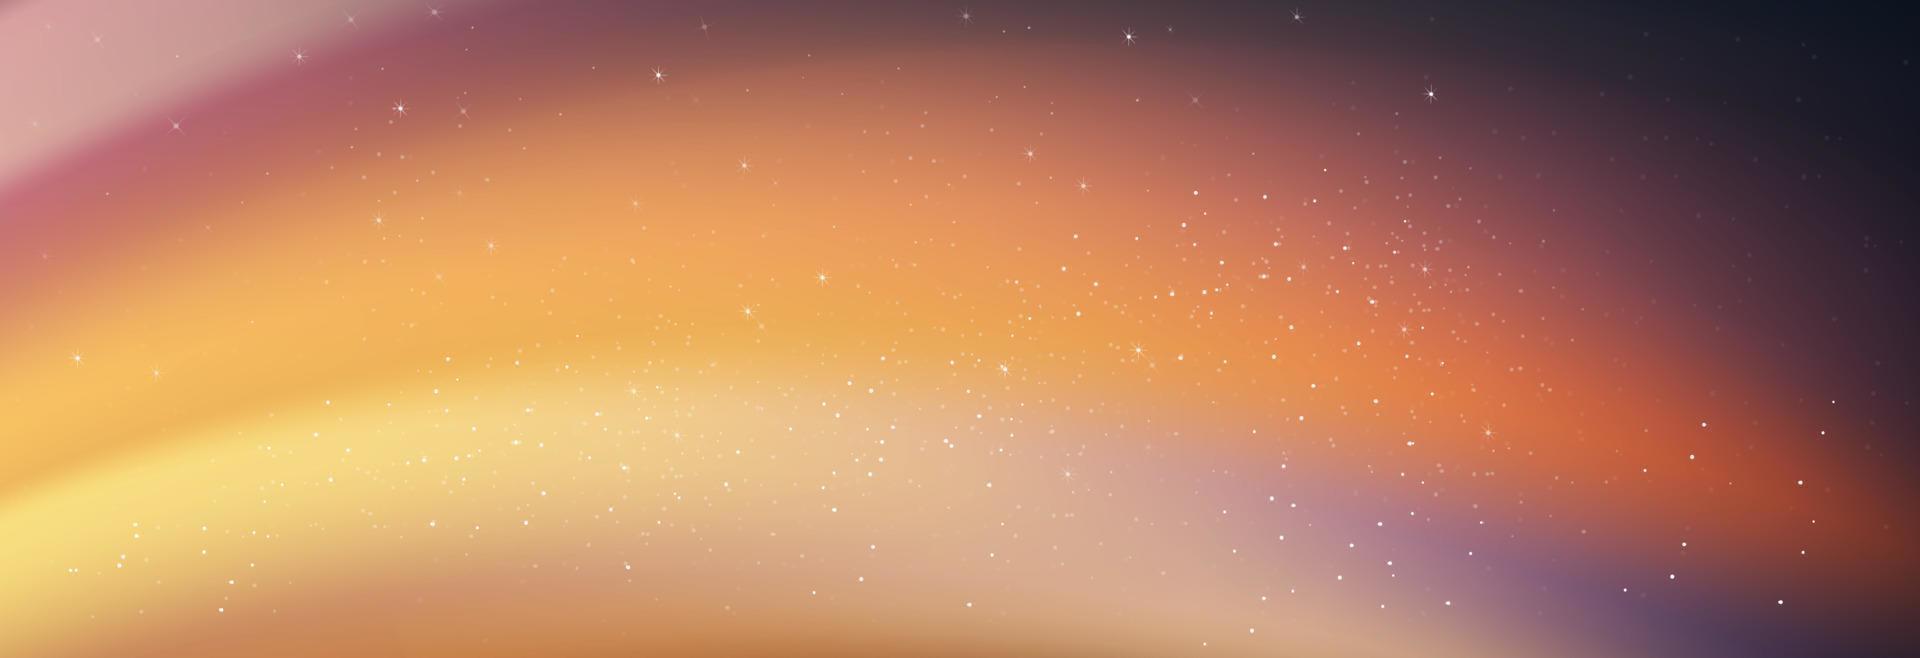 nachtelijke hemel met sterren die schijnen en komeet vallen, landschap dramatische melkweg met orang, roze kleur, universum met ruimte achtergrond van galaxy.vector banner ster veld in schemering hemel voor reizen achtergrond vector